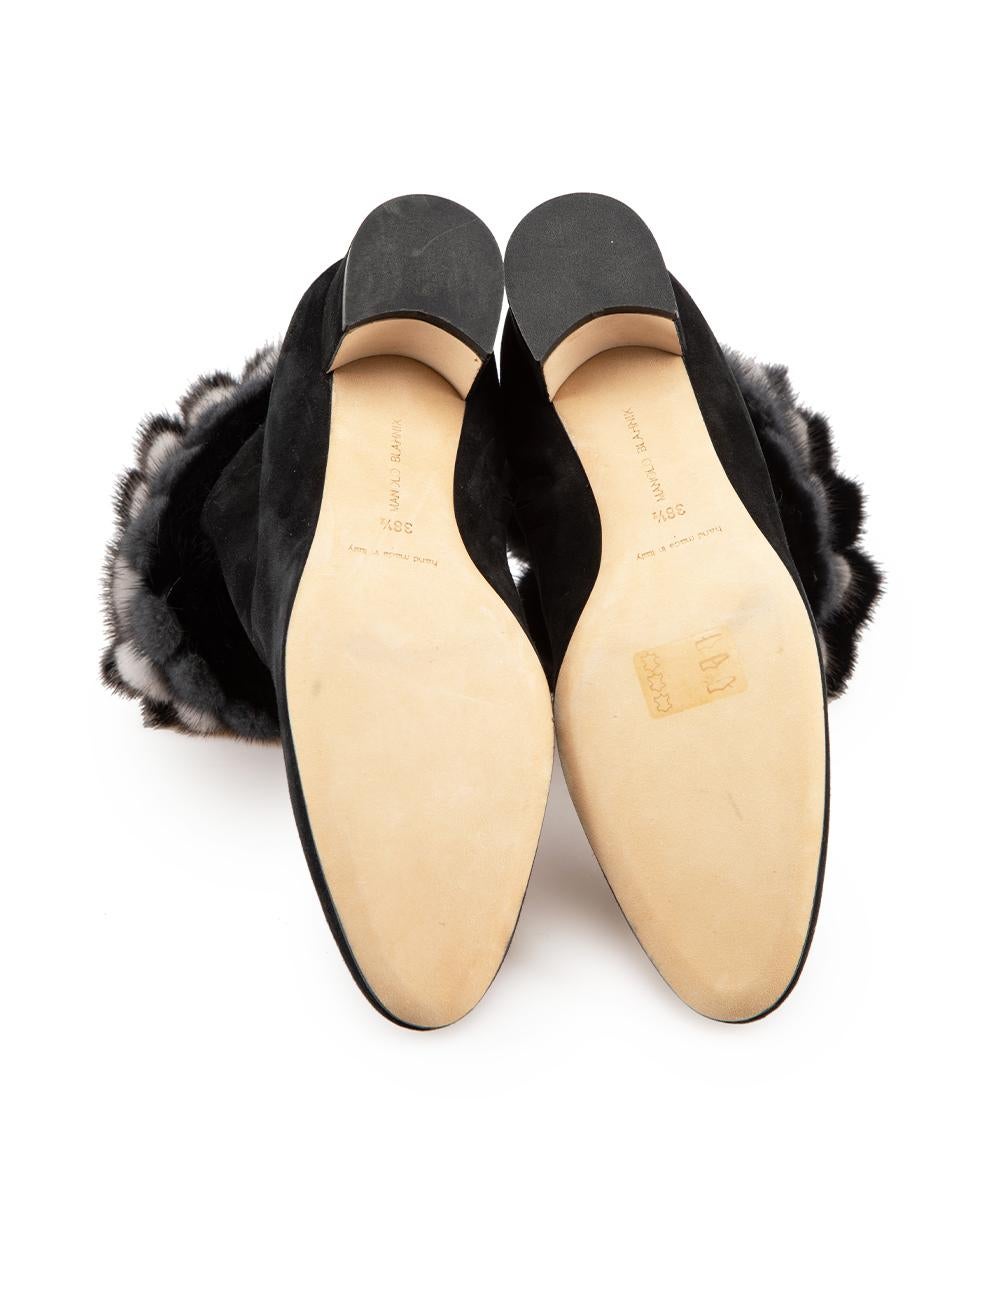 Women's Manolo Blahnik Black Suede Fur Trim Ankle Boots Size IT 38.5 For Sale